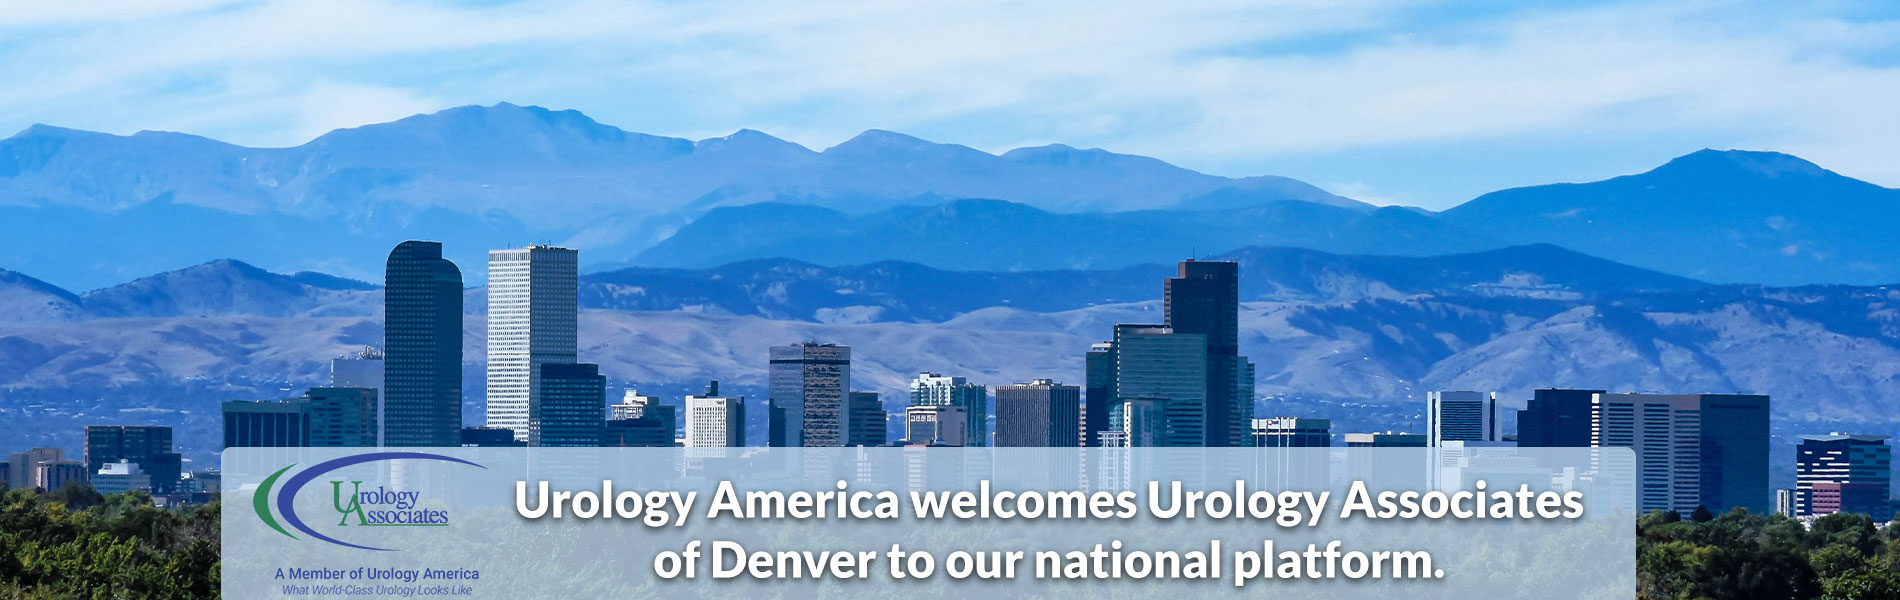 Urology America welcomes Urology Associates of Denver to our national platform.